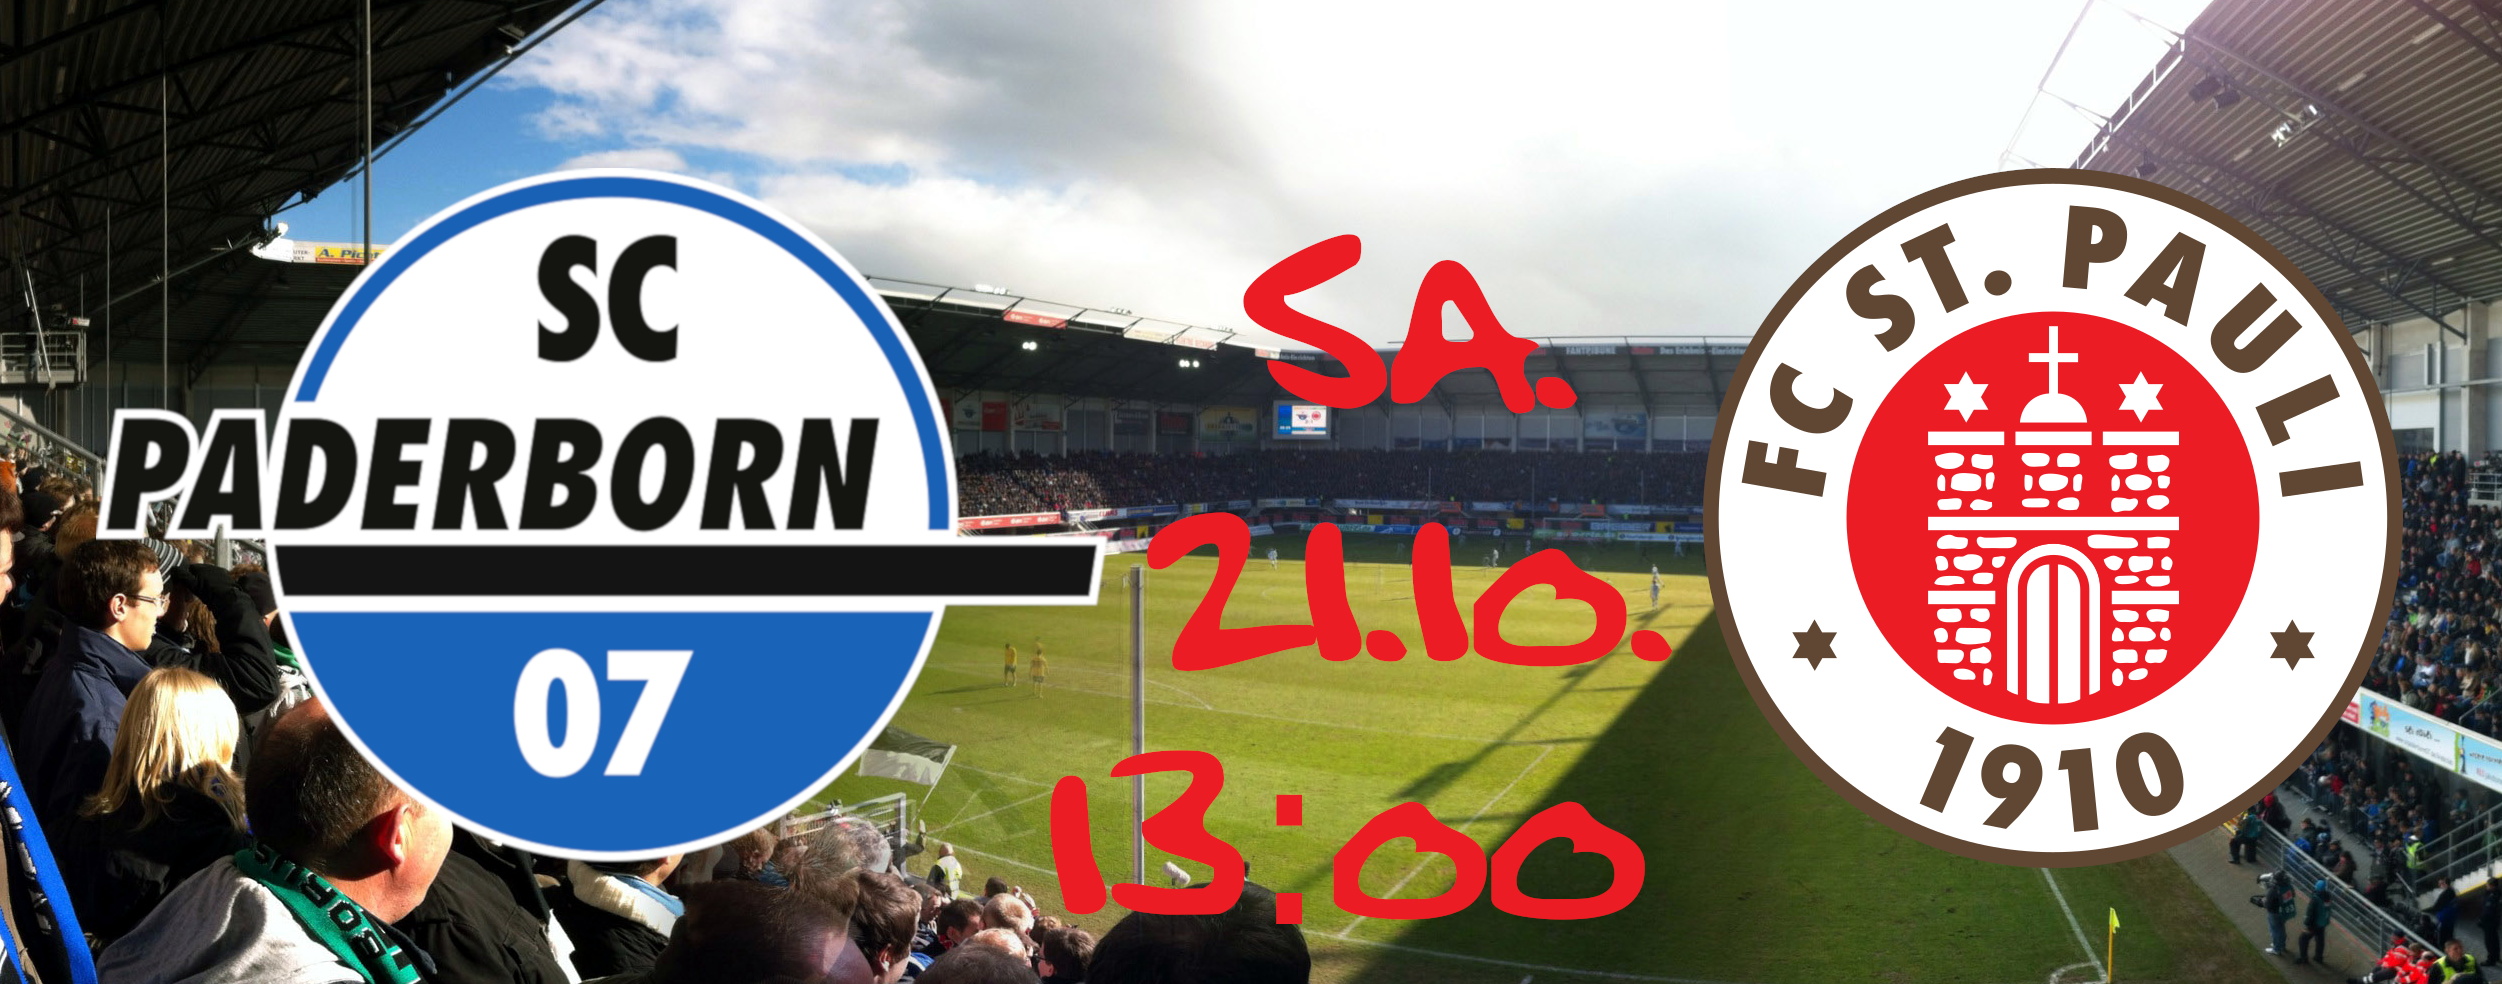 Wappen vom SC Paderborn und FC St. Pauli vor einem Foto aus dem Paderborner Stadion mit dem Spieldatum und der Spielzeit